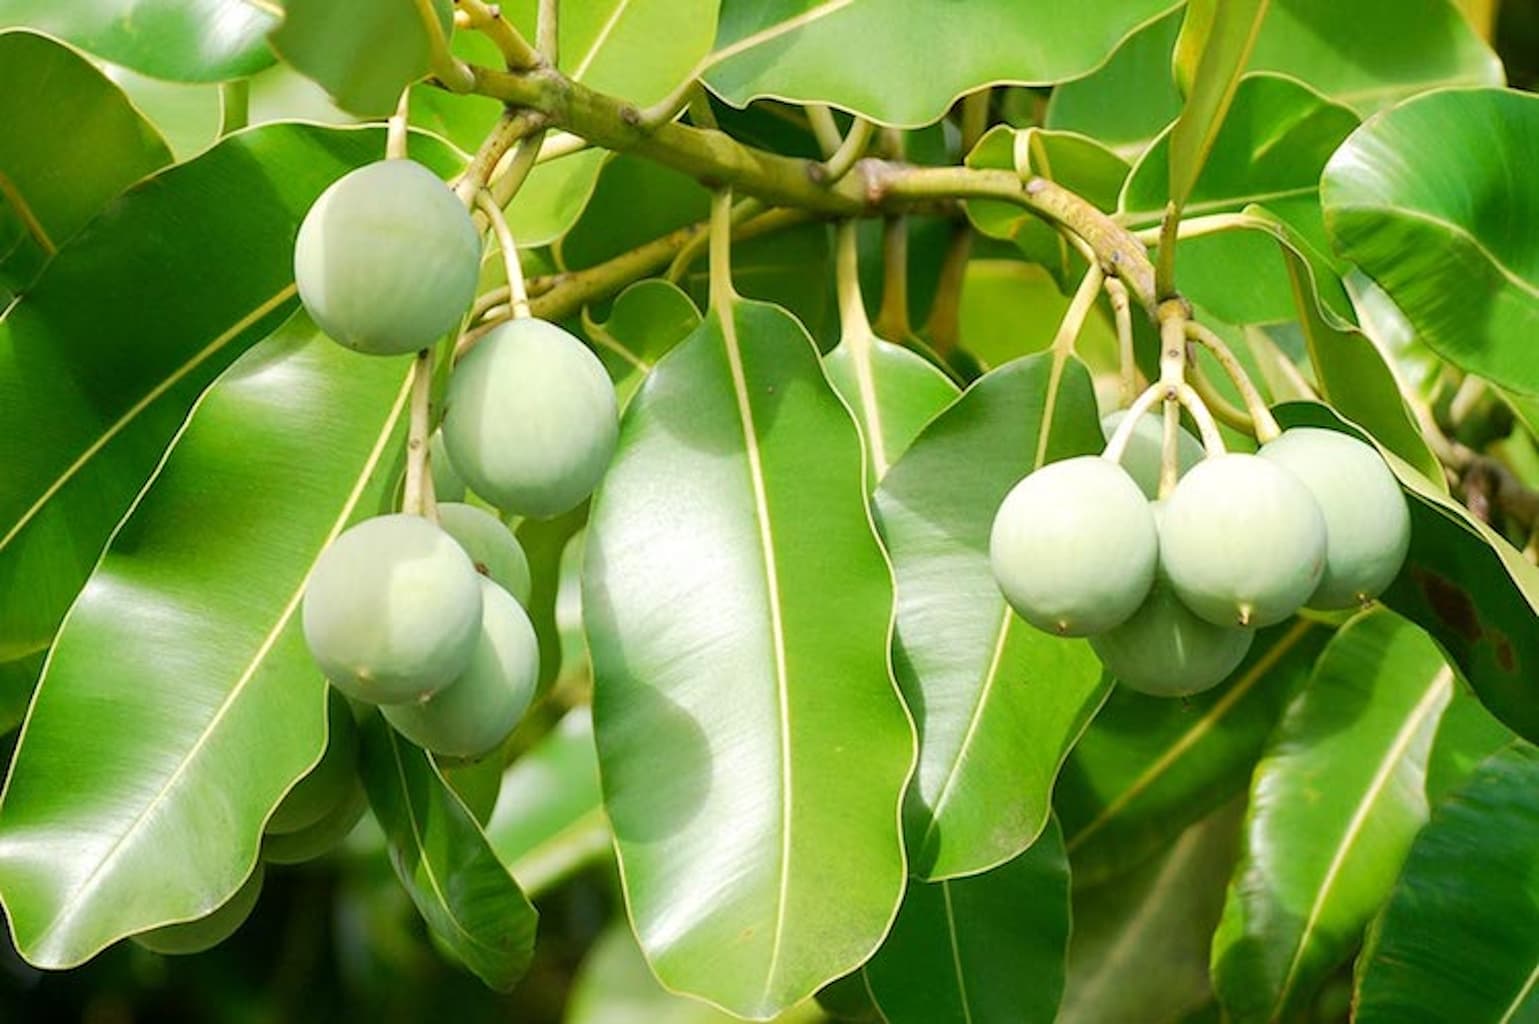 Fresh green tamanu fruit and foliage of the tamanu tree